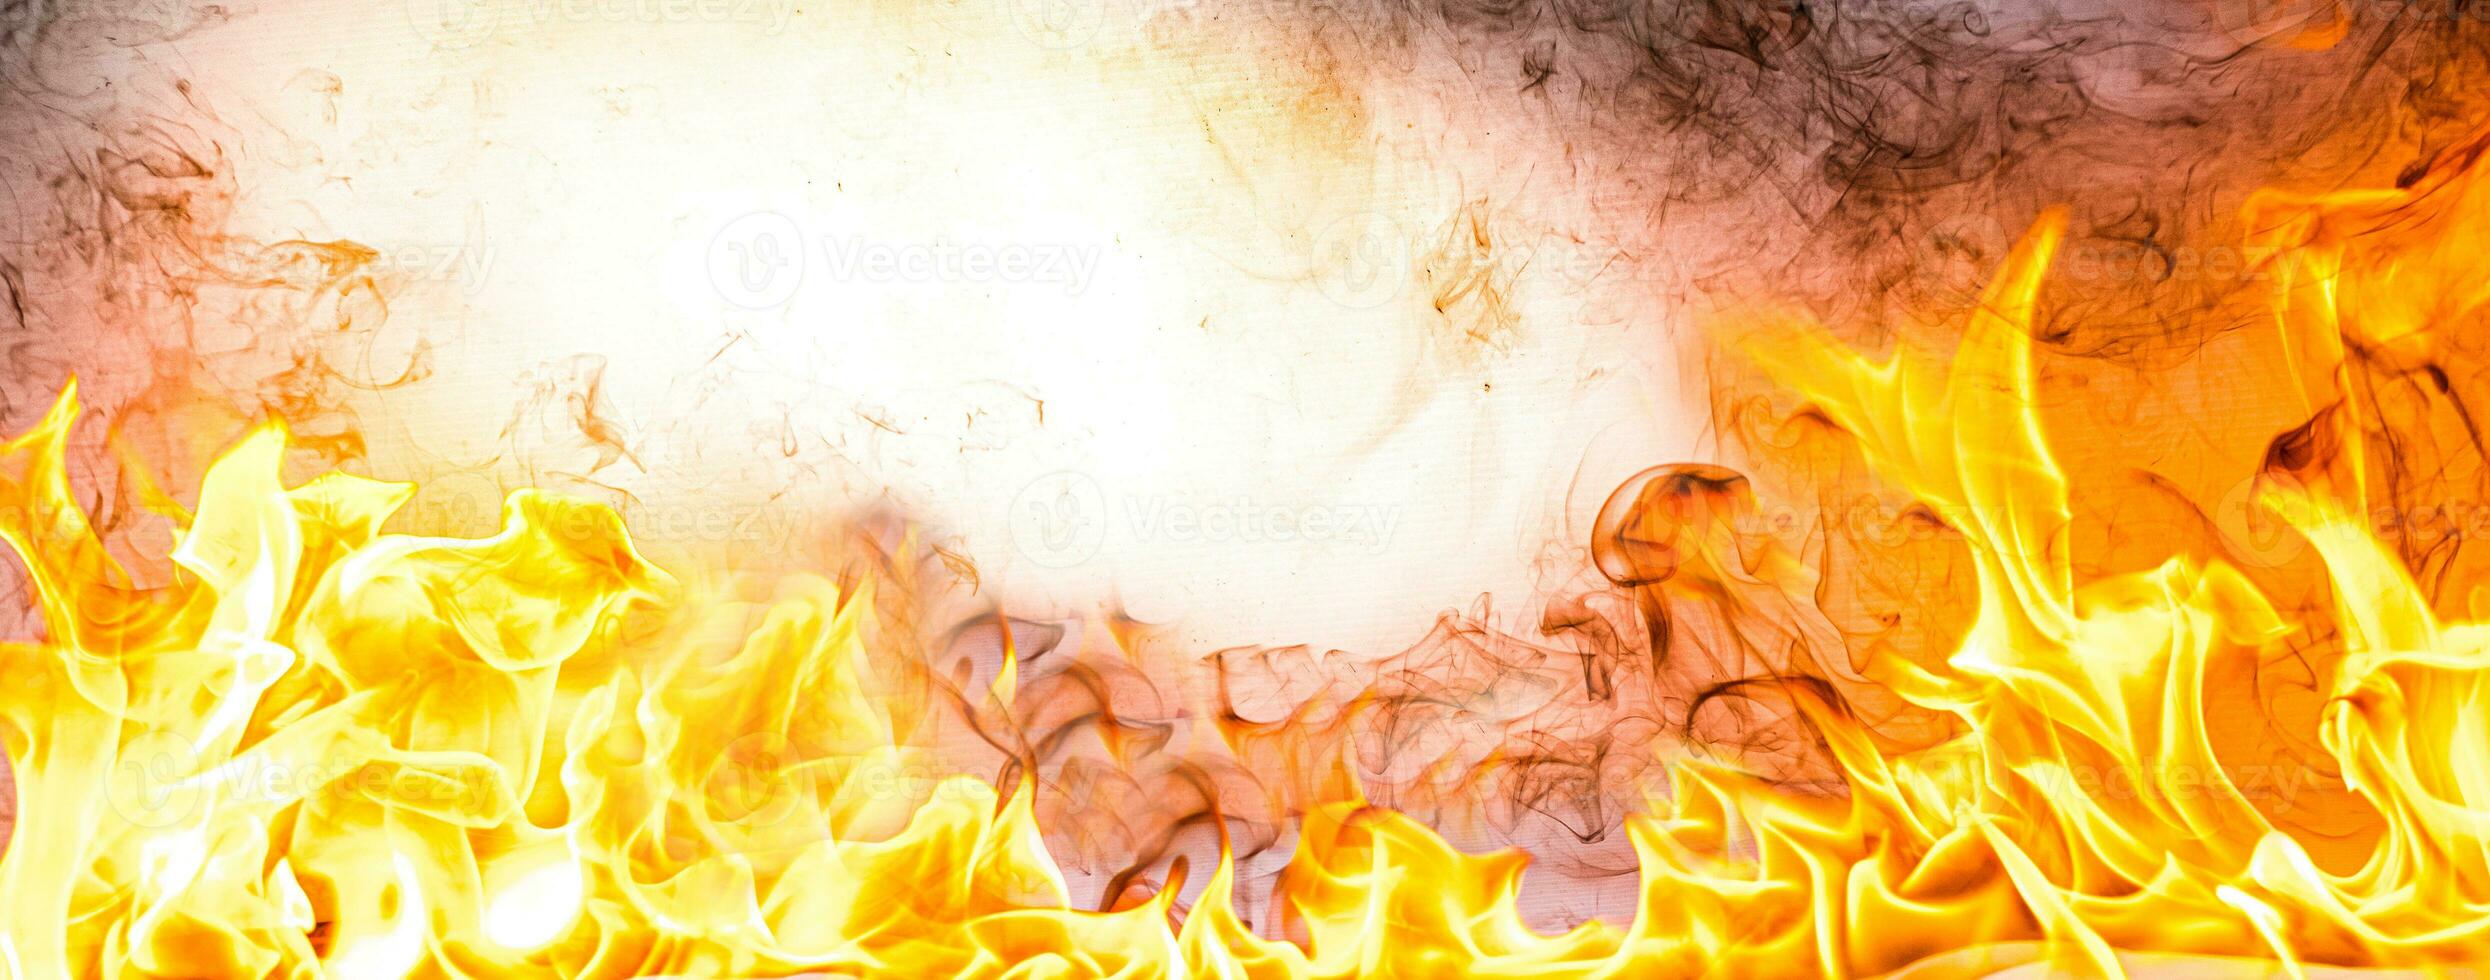 fiamme di fuoco con fumo su sfondo nero foto